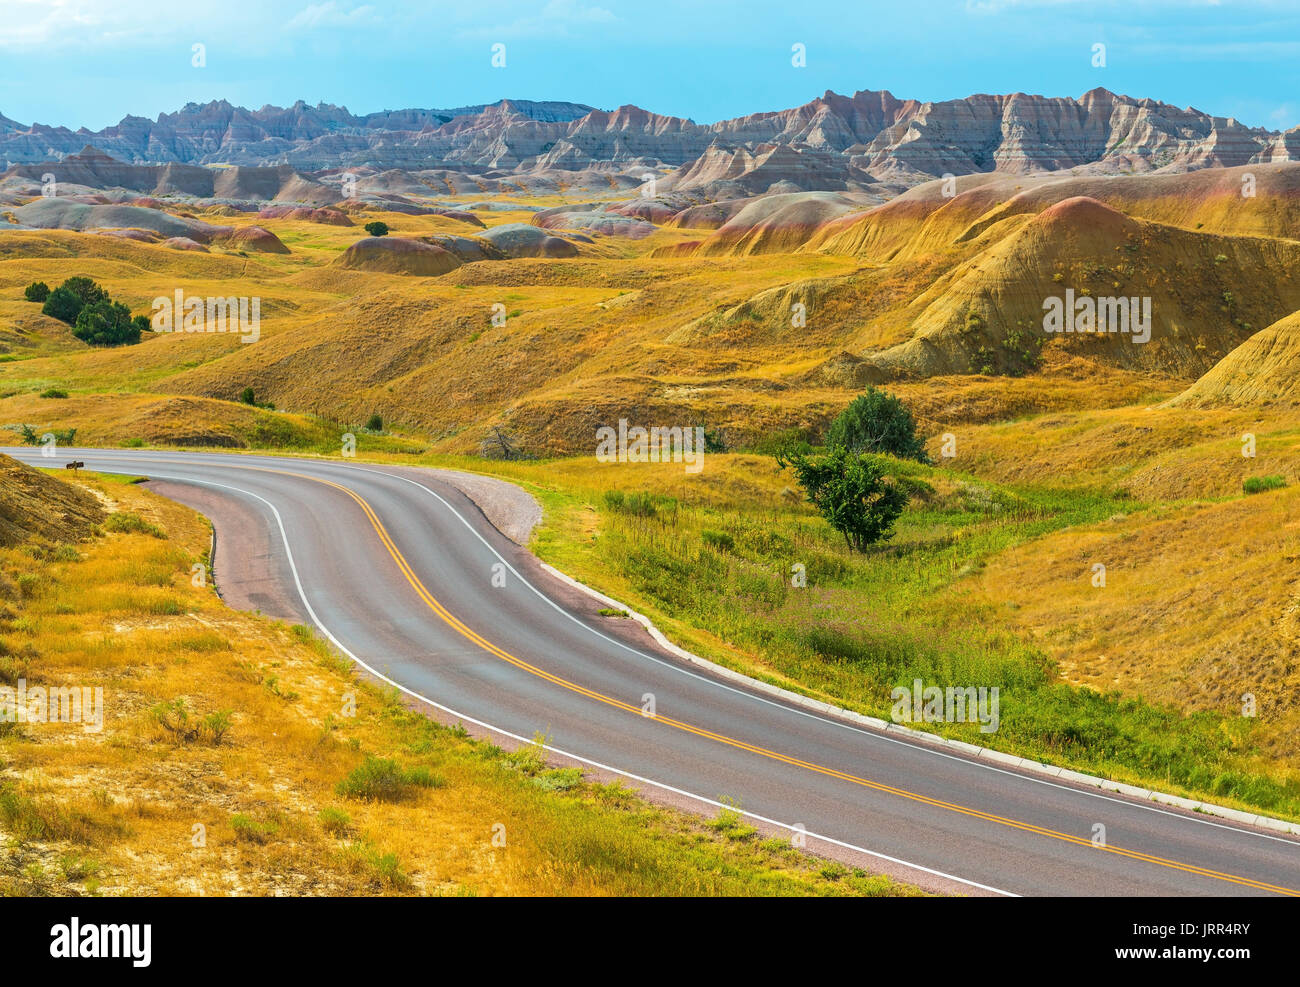 La carretera de montaña amarilla con formaciones de piedra geológica dentro de Badlands National Park cerca de Rapid City, en el estado de Dakota del Sur, EE.UU.. Foto de stock